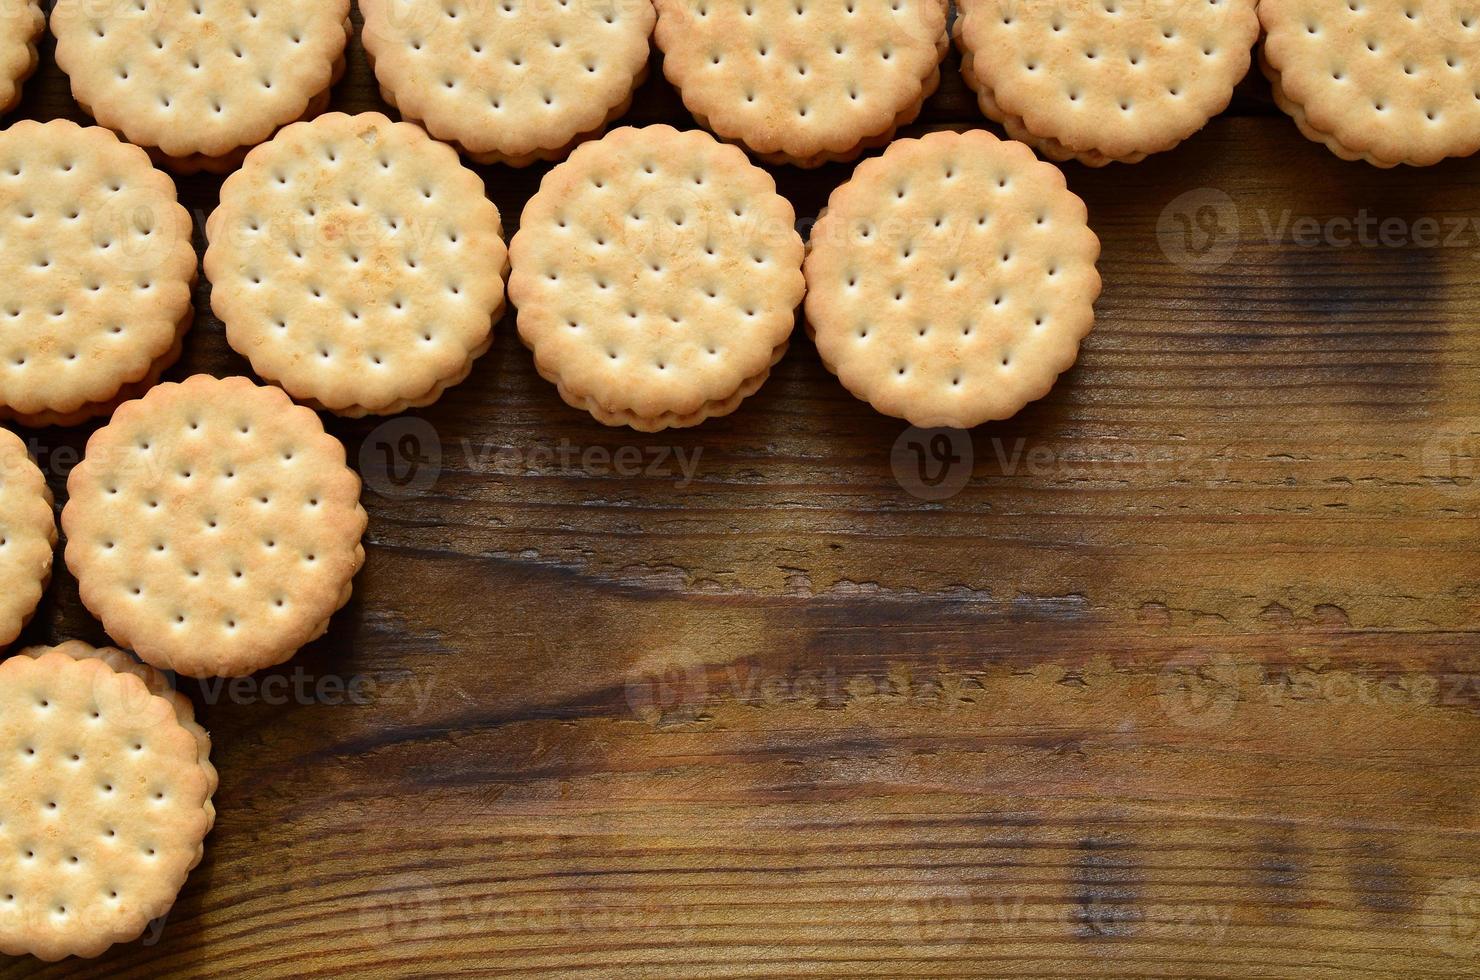 um biscoito redondo com recheio de coco está em grandes quantidades em uma superfície de madeira marrom. foto de guloseimas comestíveis em um fundo de madeira com espaço de cópia